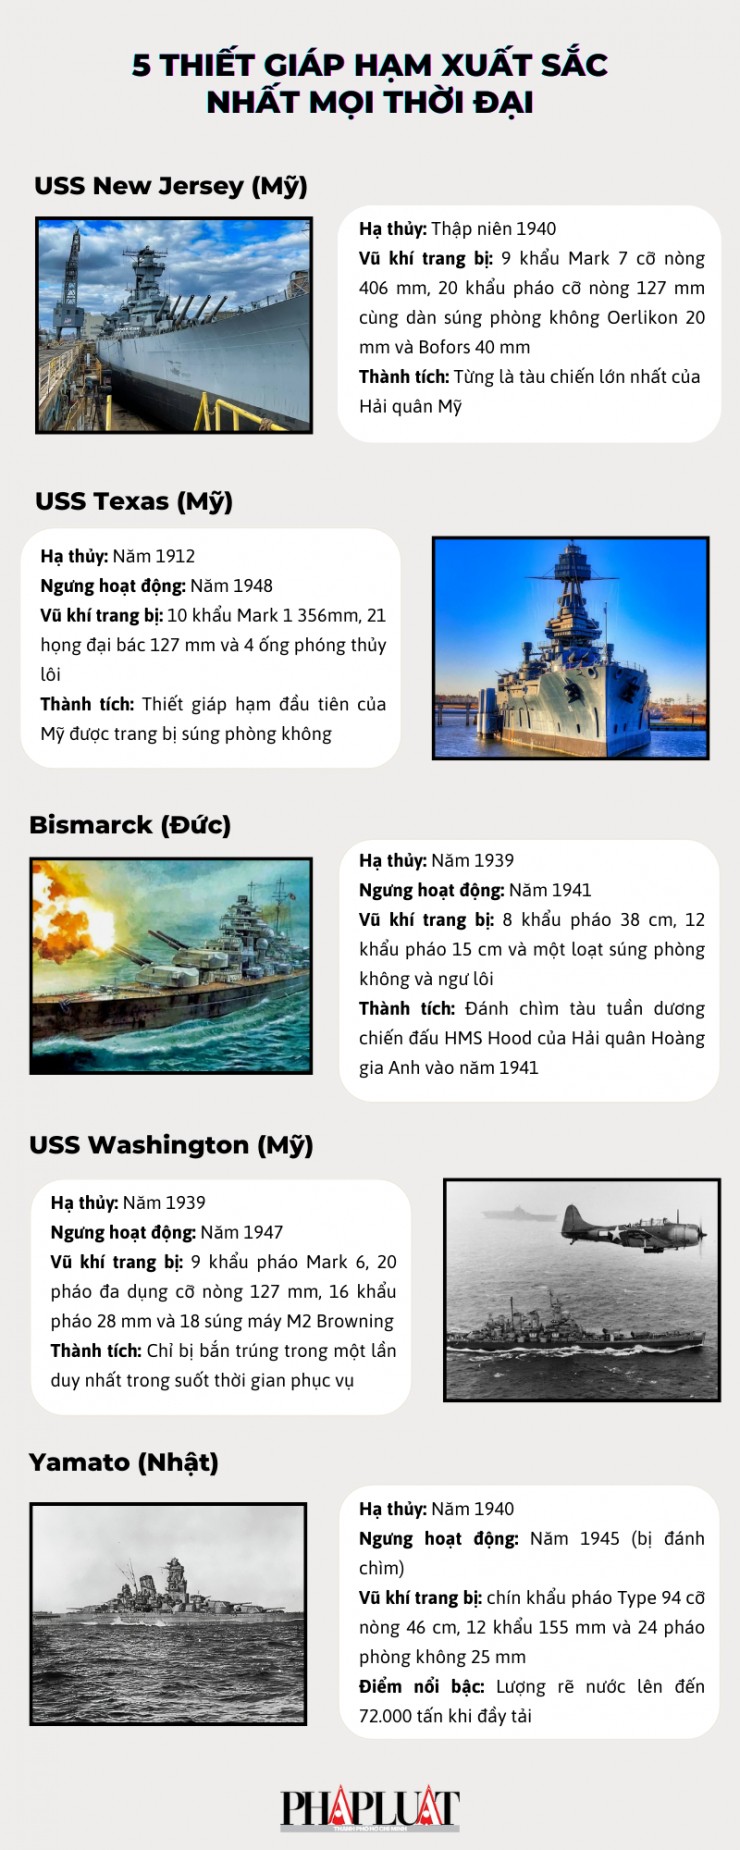 5 thiết giáp hạm xuất sắc nhất mọi thời đại Nguồn: THE NATIONAL INTEREST Đồ họa: THẢO VY